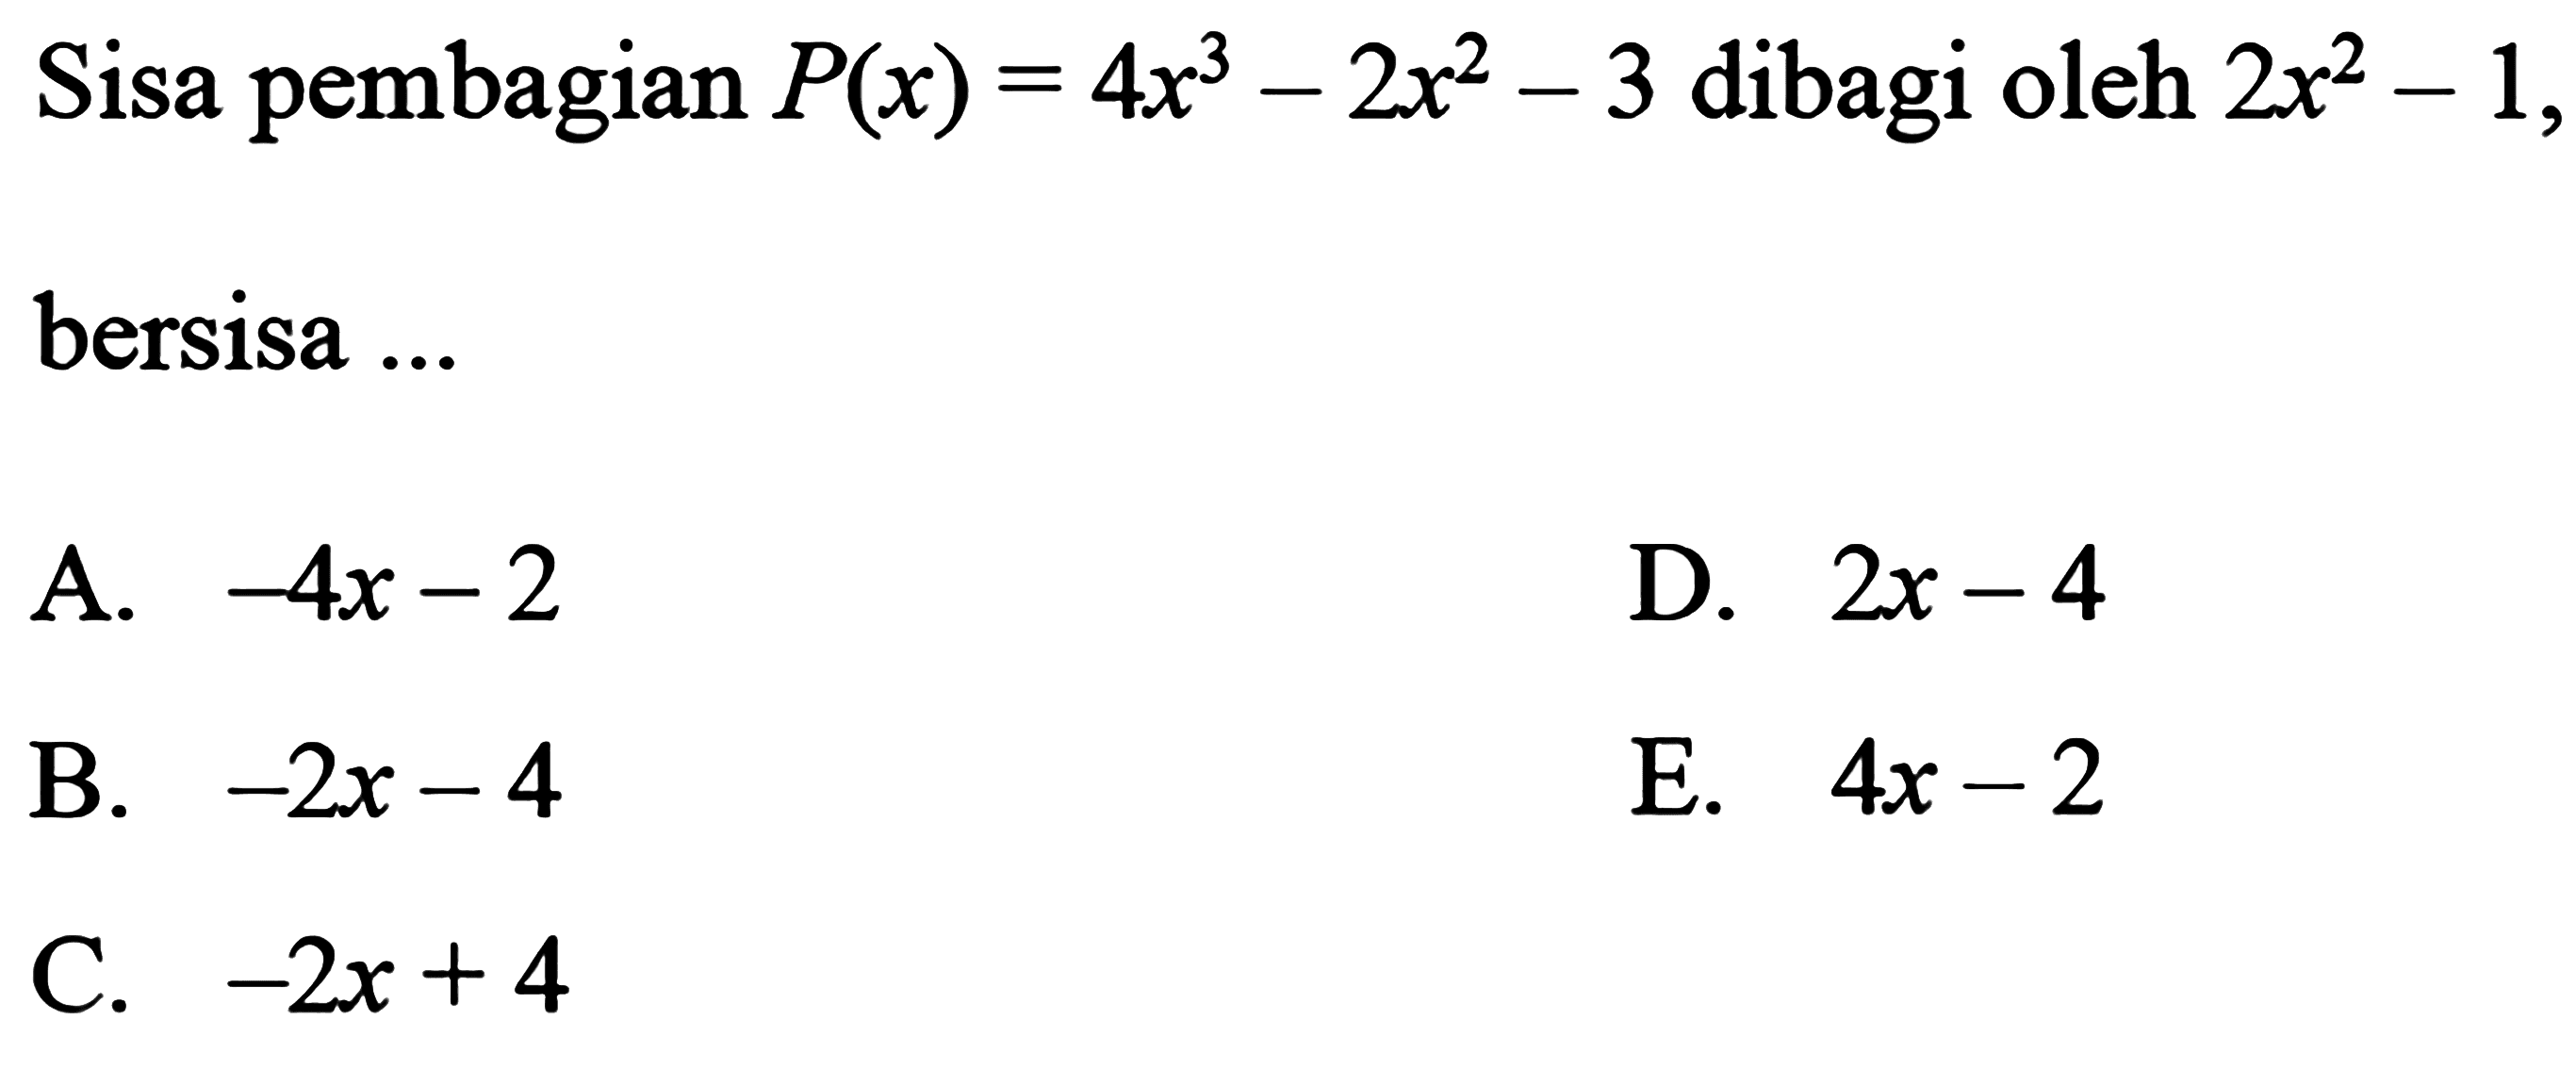 Sisa pembagian P(x)=4x^3-2x^2-3 dibagi oleh 2x^2-1, bersisa ...